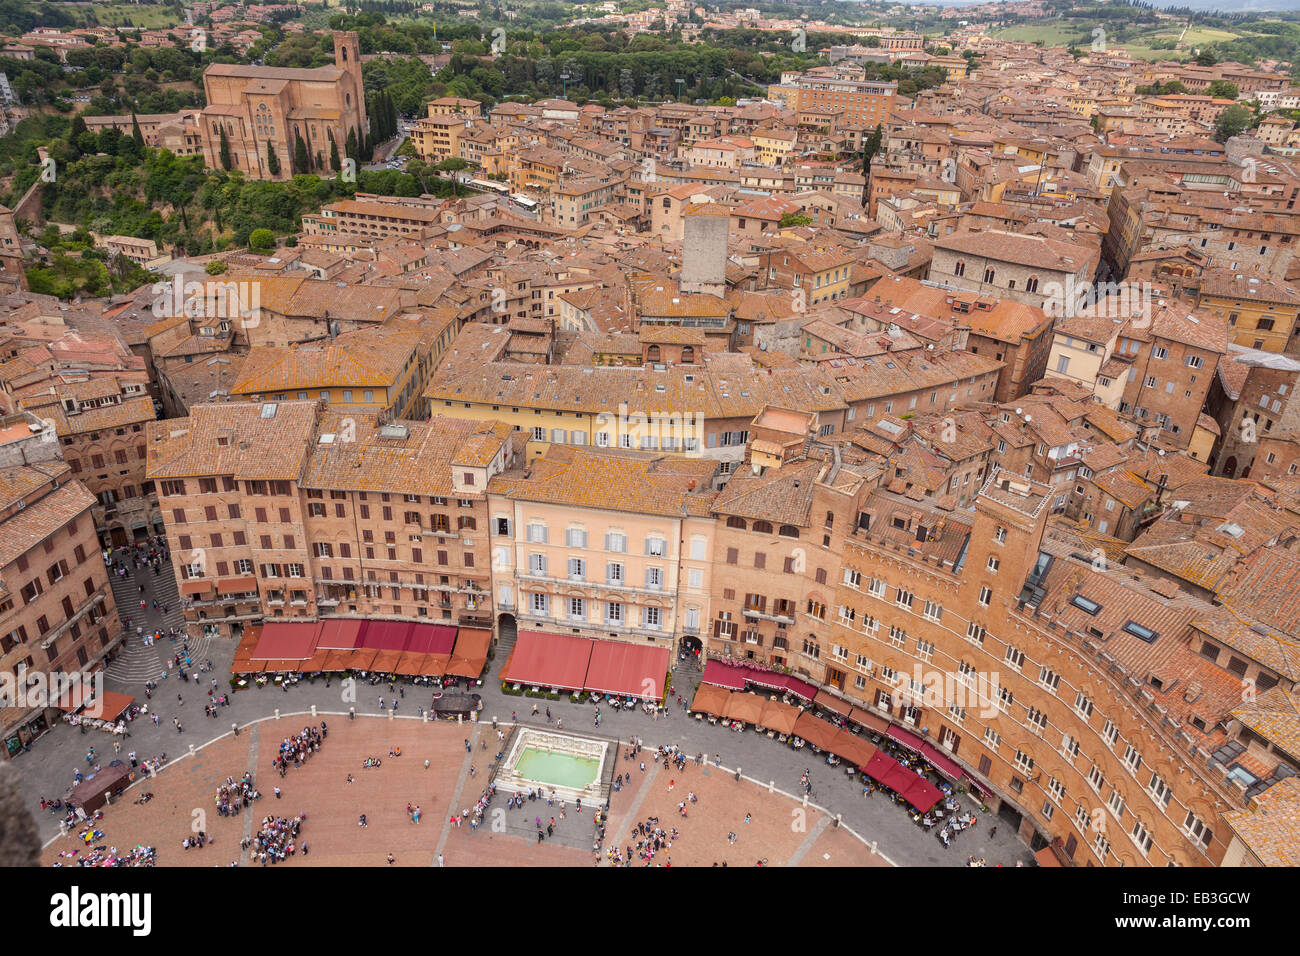 La Piazza del Campo, la sienne. La zone est considérée comme l'une des plus grandes places d'Europe médiévale. Banque D'Images